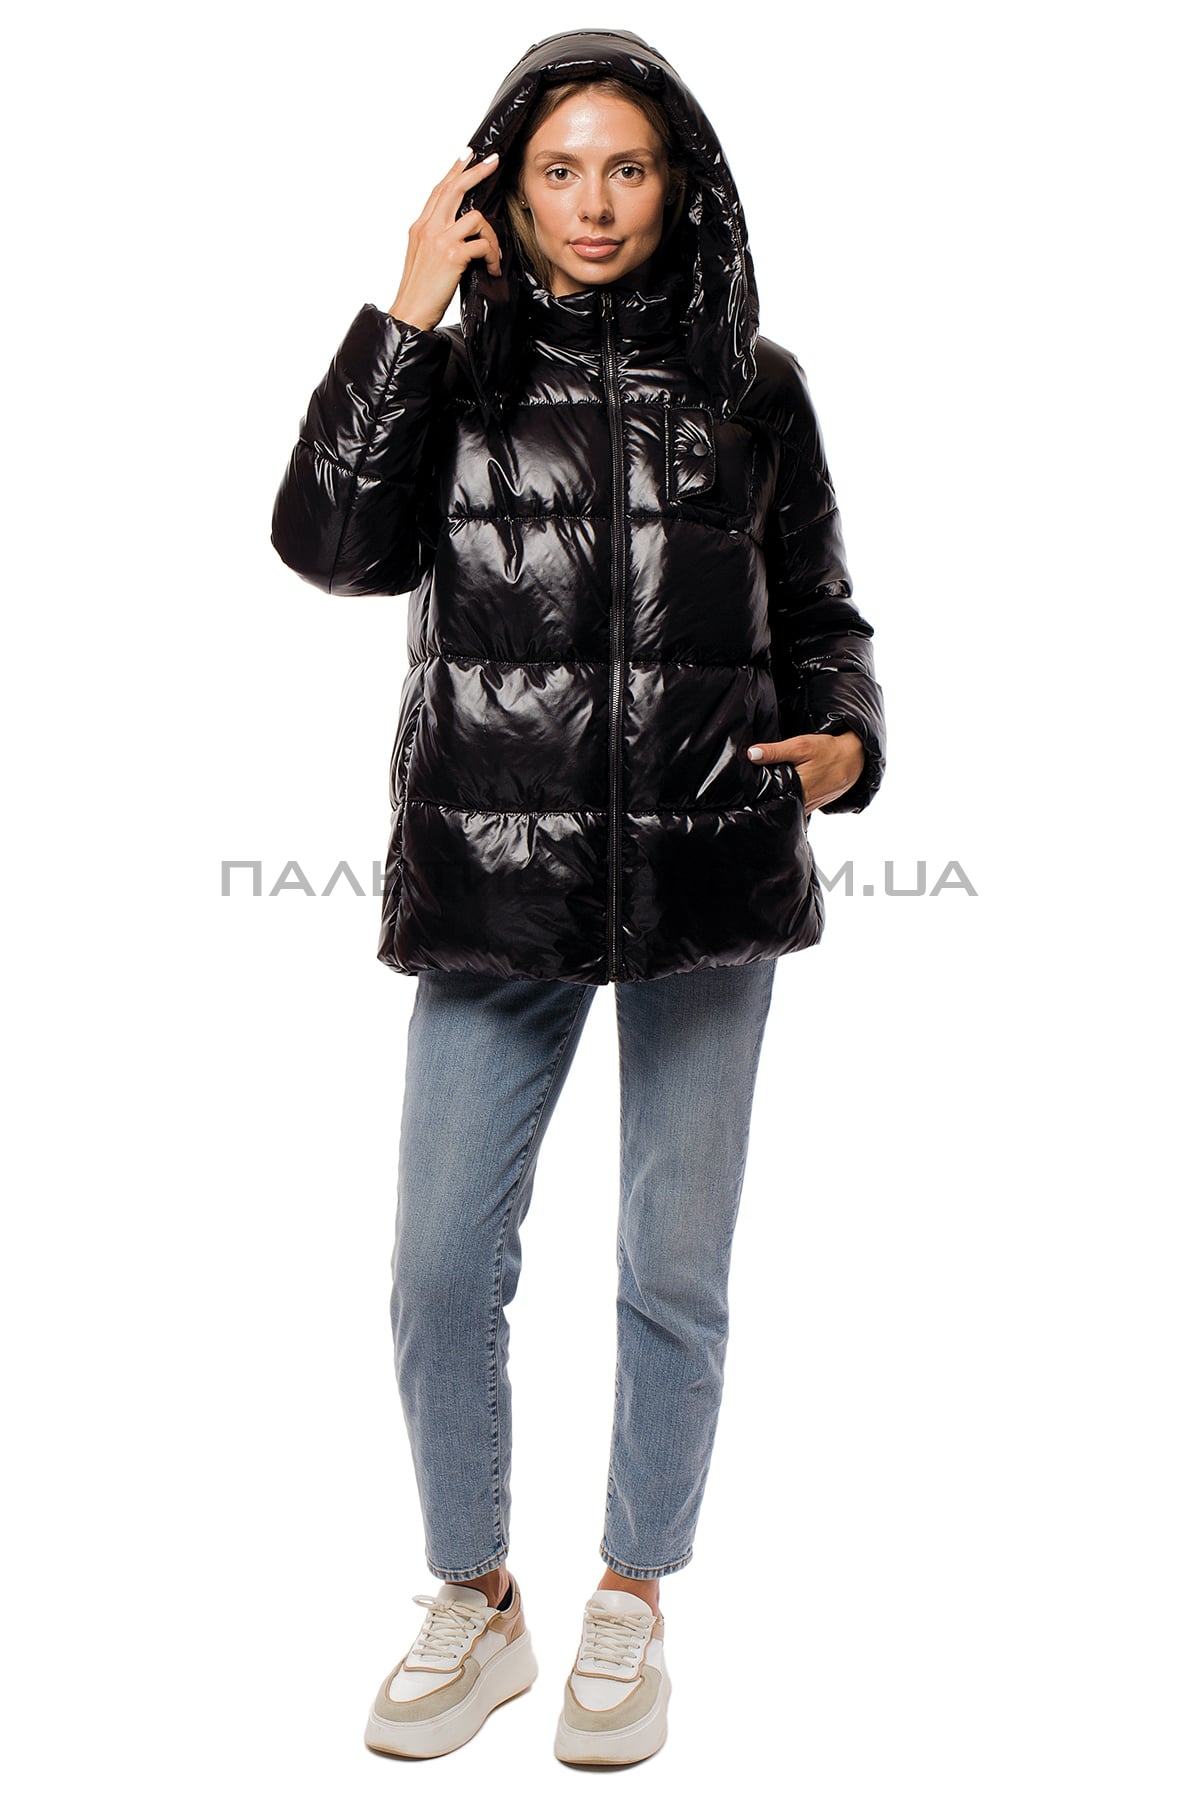  Женская куртка с утеплителем Tinsul-M черная